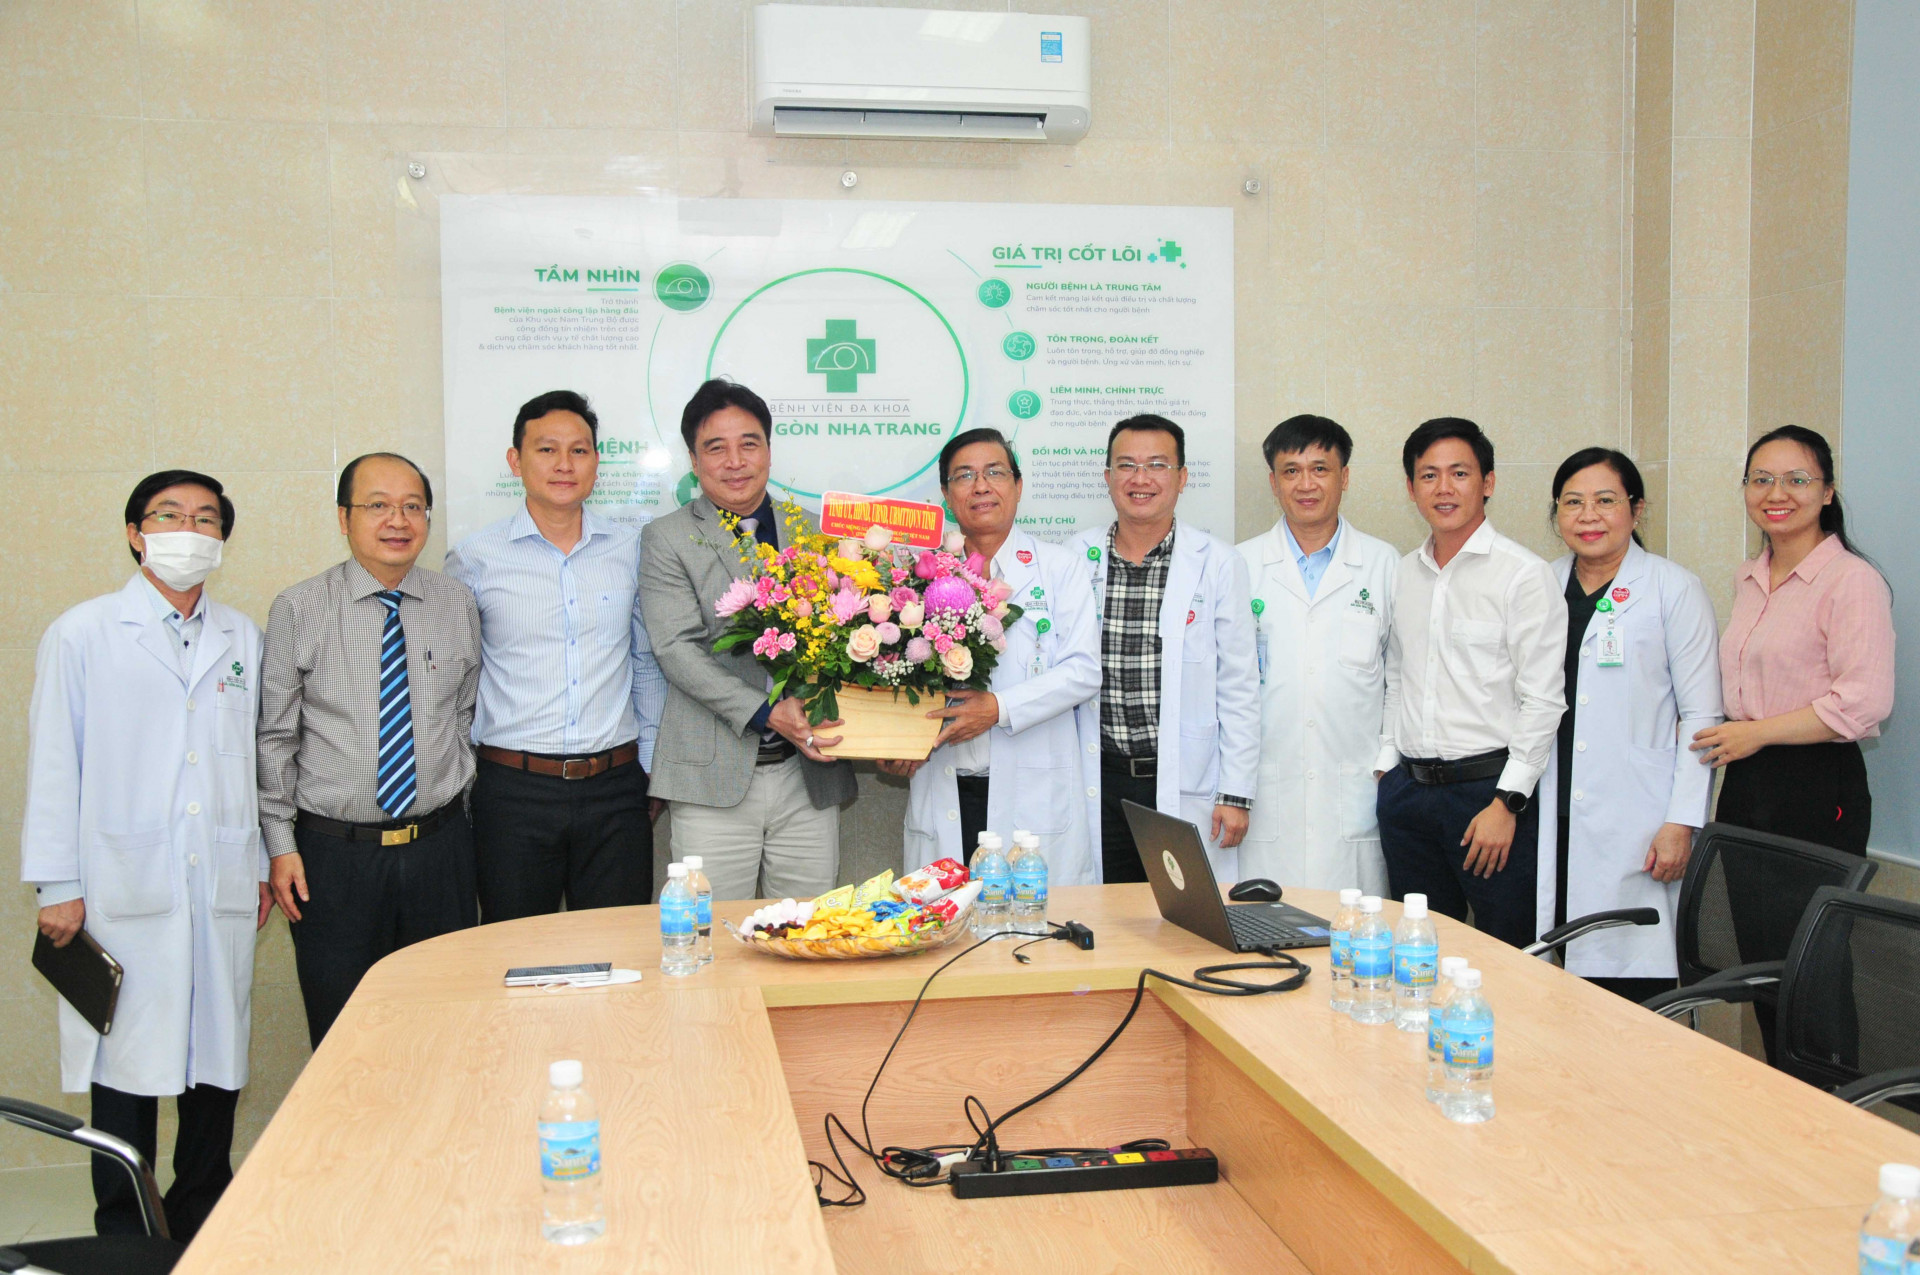 Lãnh đạo tỉnh thăm, tặng hoa và quà chúc mừng Bệnh viện Sài Gòn - Nha Trang